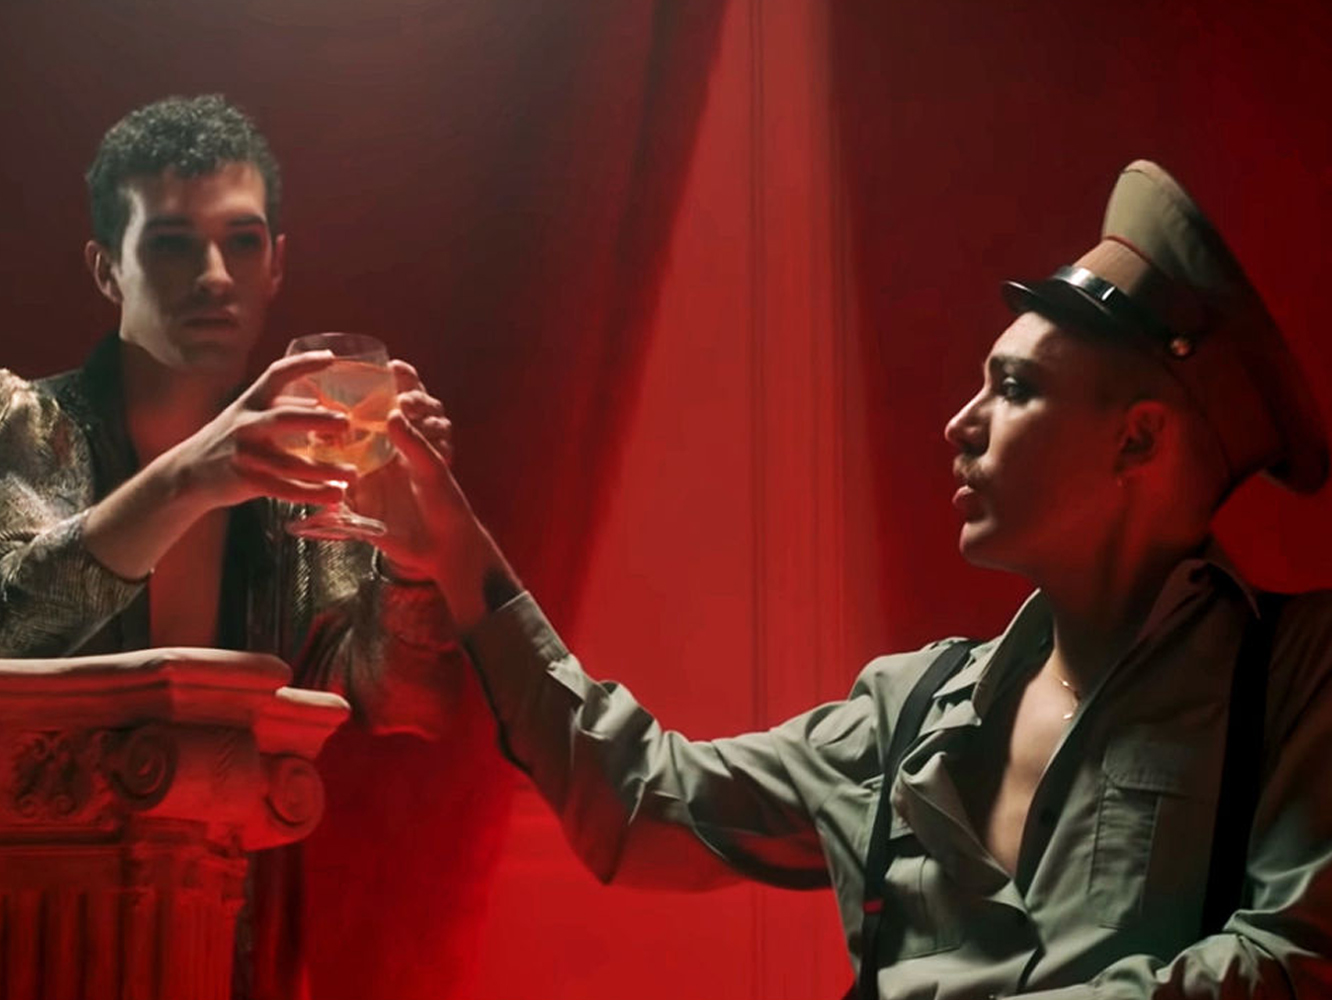  Miss Caffeina se ponen ¿demasiado? Fangoria en el remix de ‘Cola De Pez (Fuego)’ con Javiera Mena y La Casa Azul